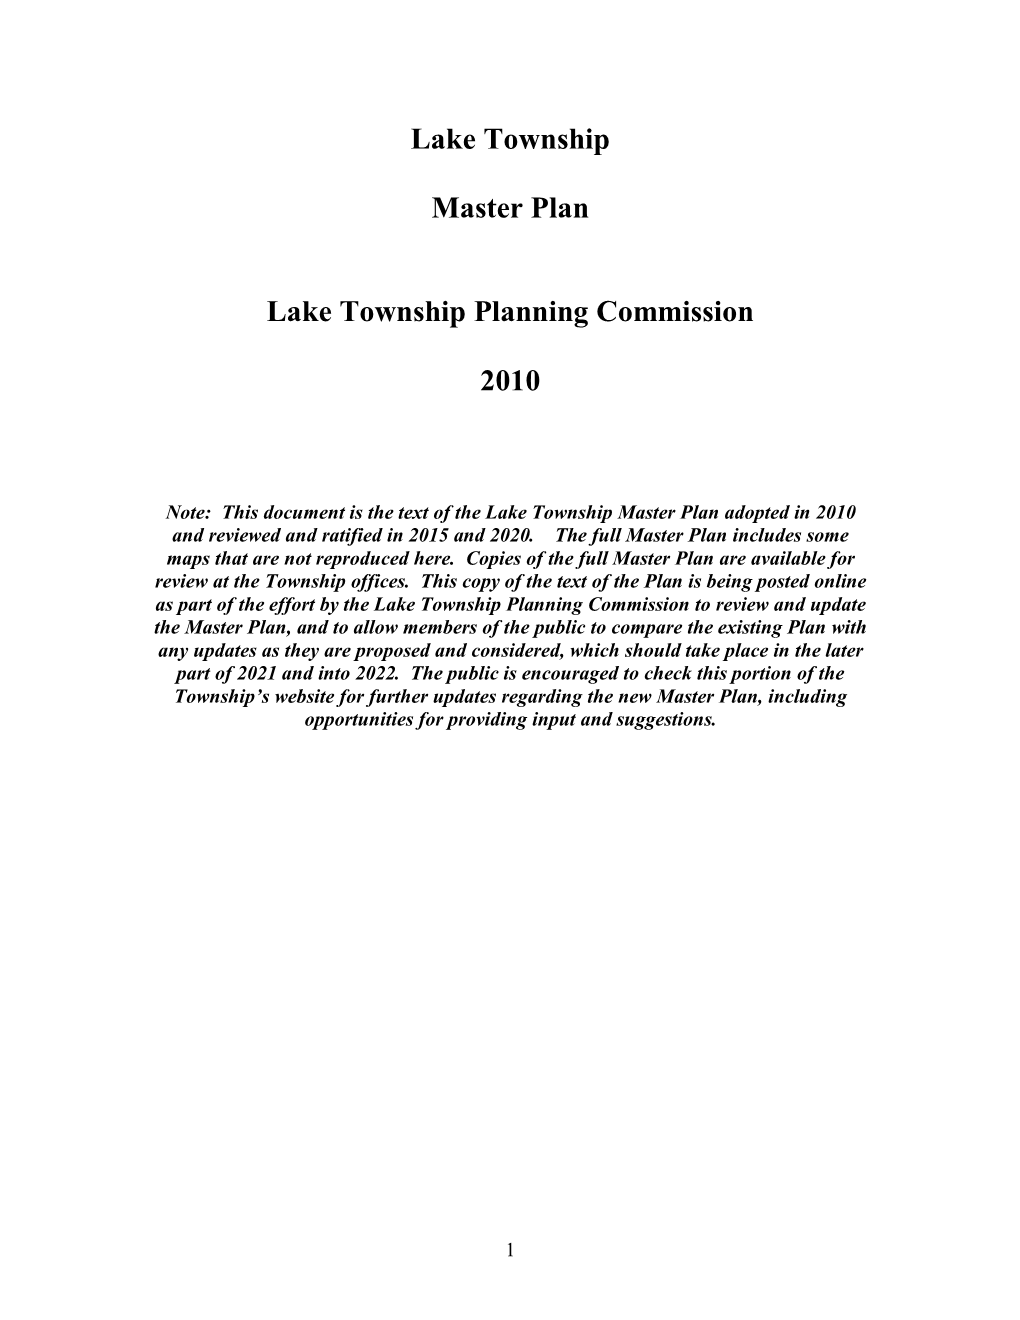 Lake Township Master Plan Lake Township Planning Commission